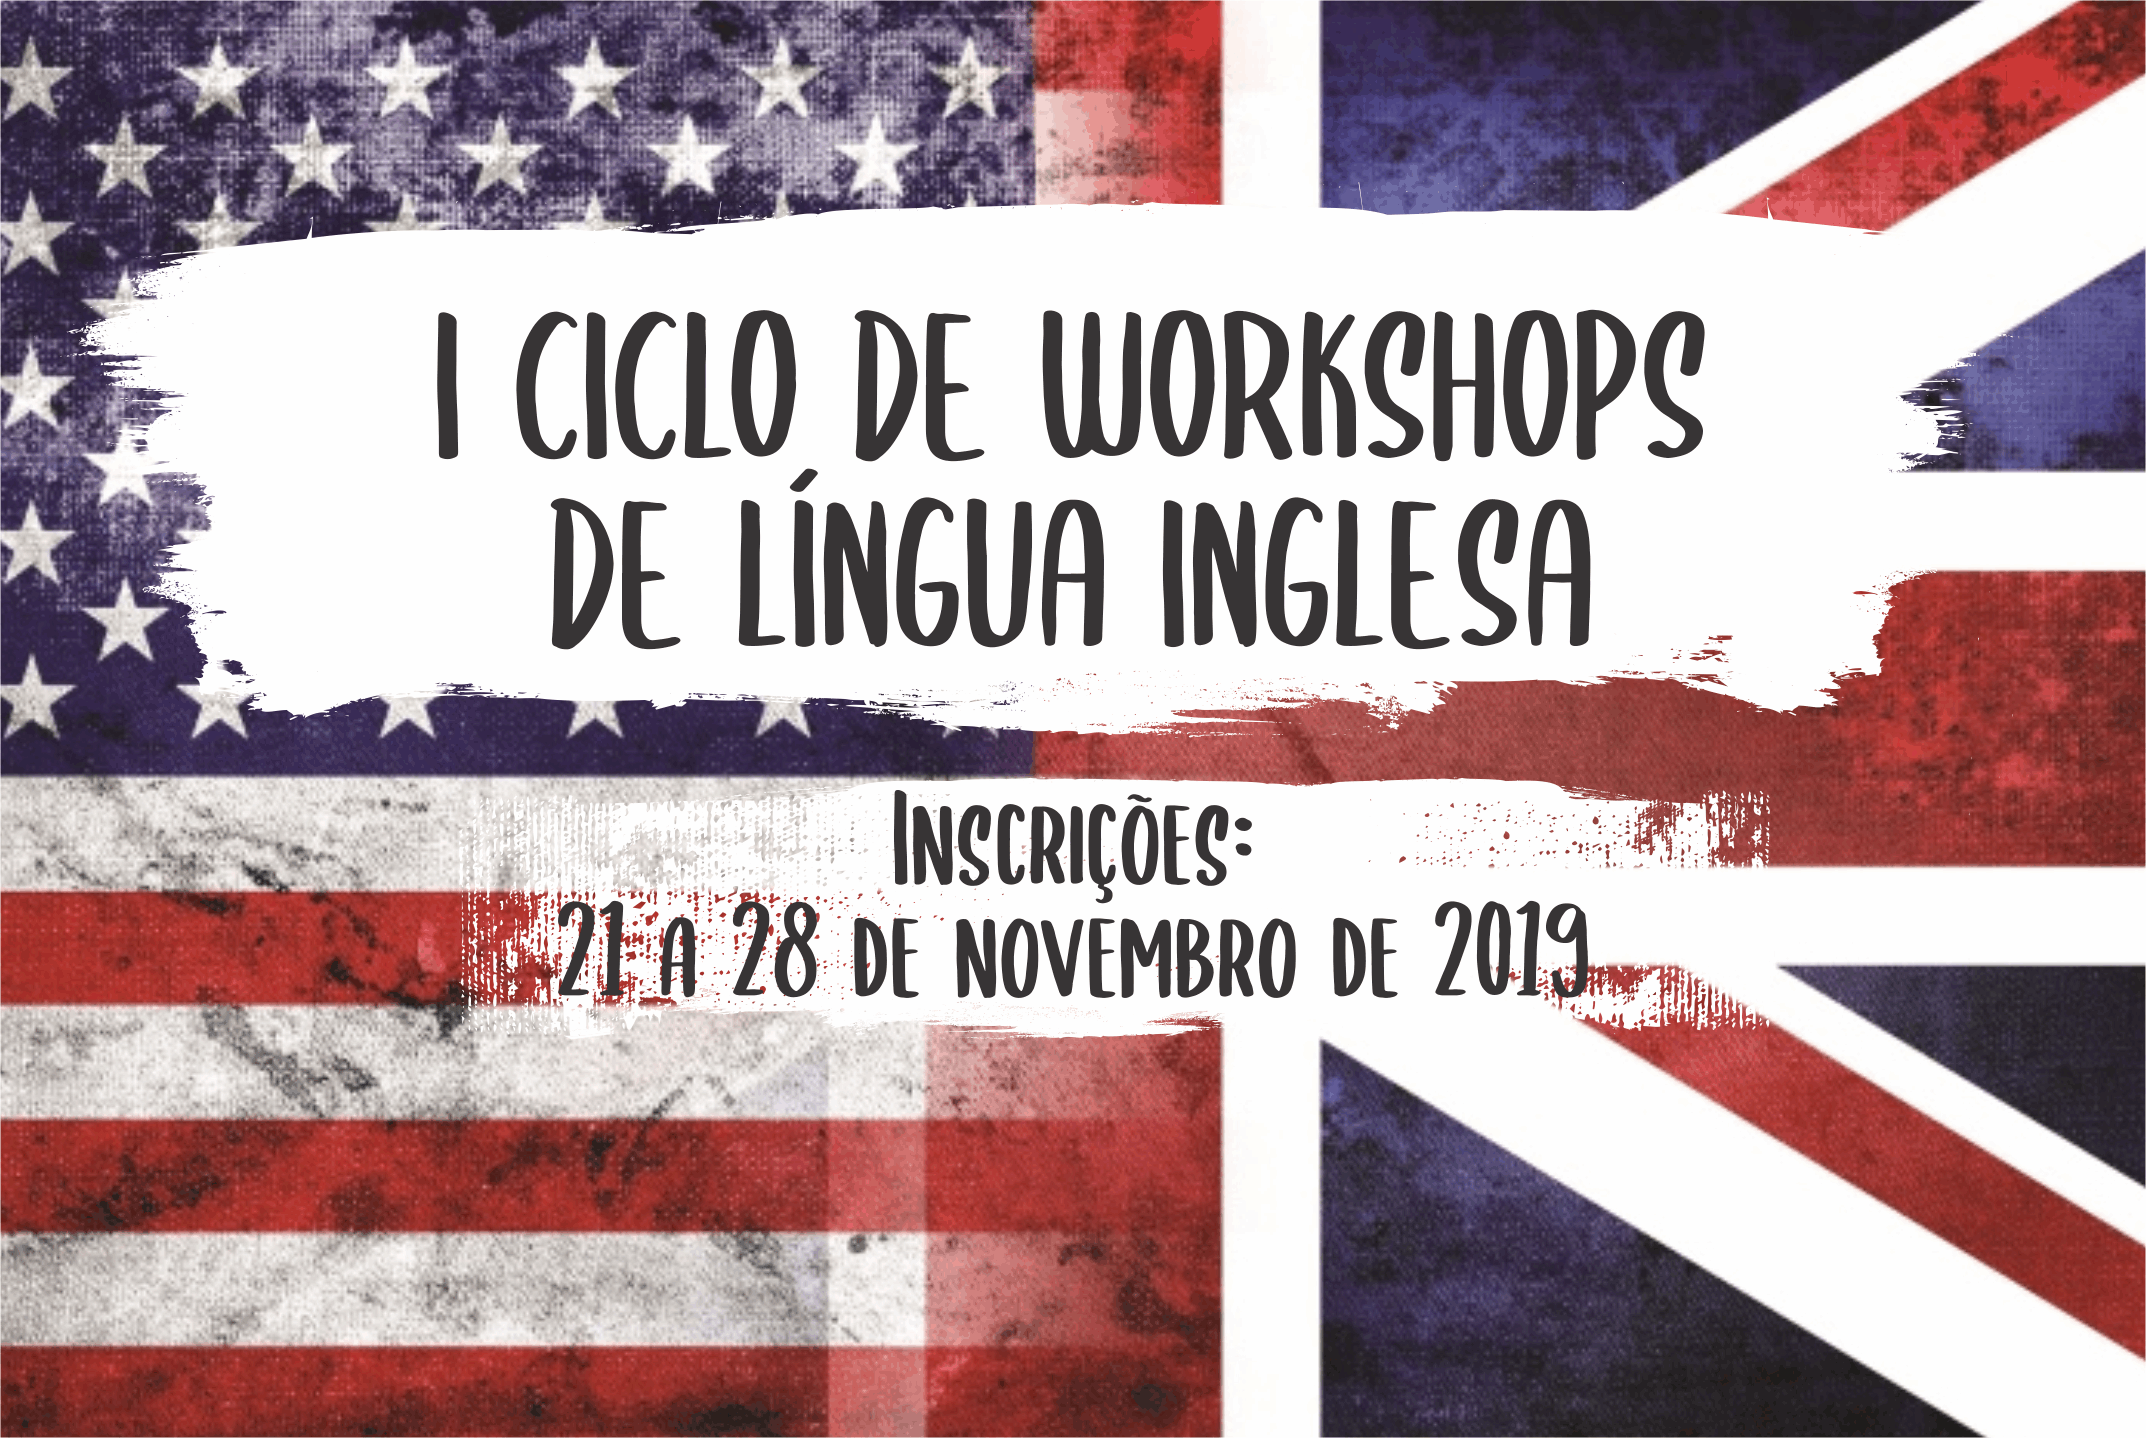 1º Ciclo de Workshops de Língua Inglesa ocorre em dezembro